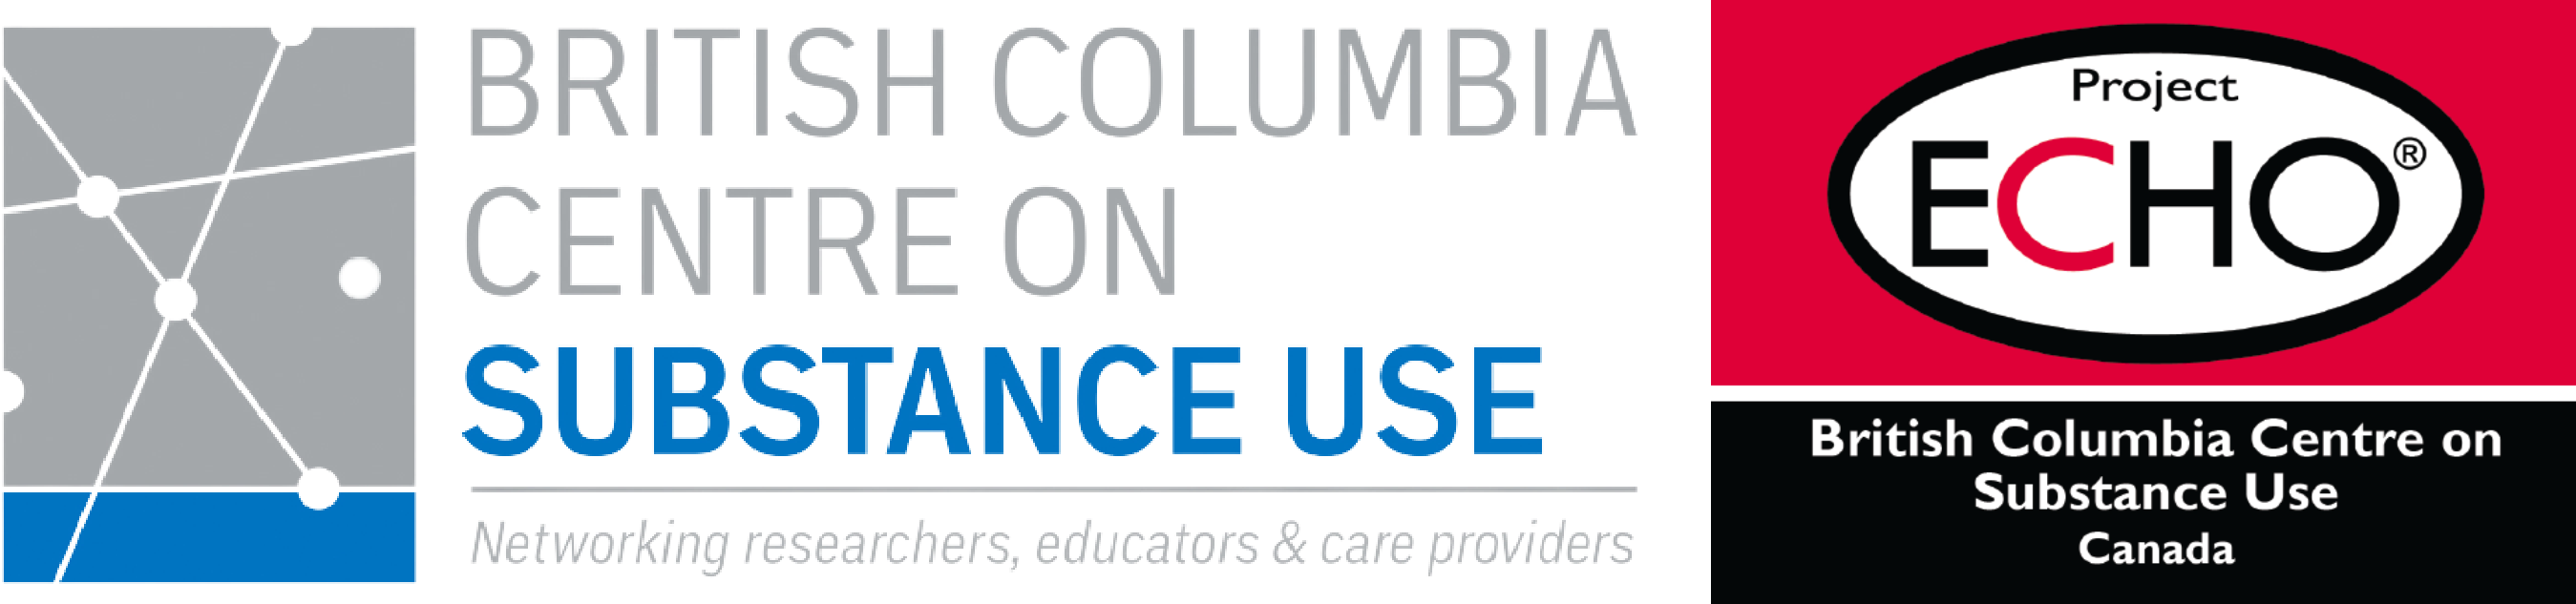 BCCSU BC ECHO on Substance Use logo